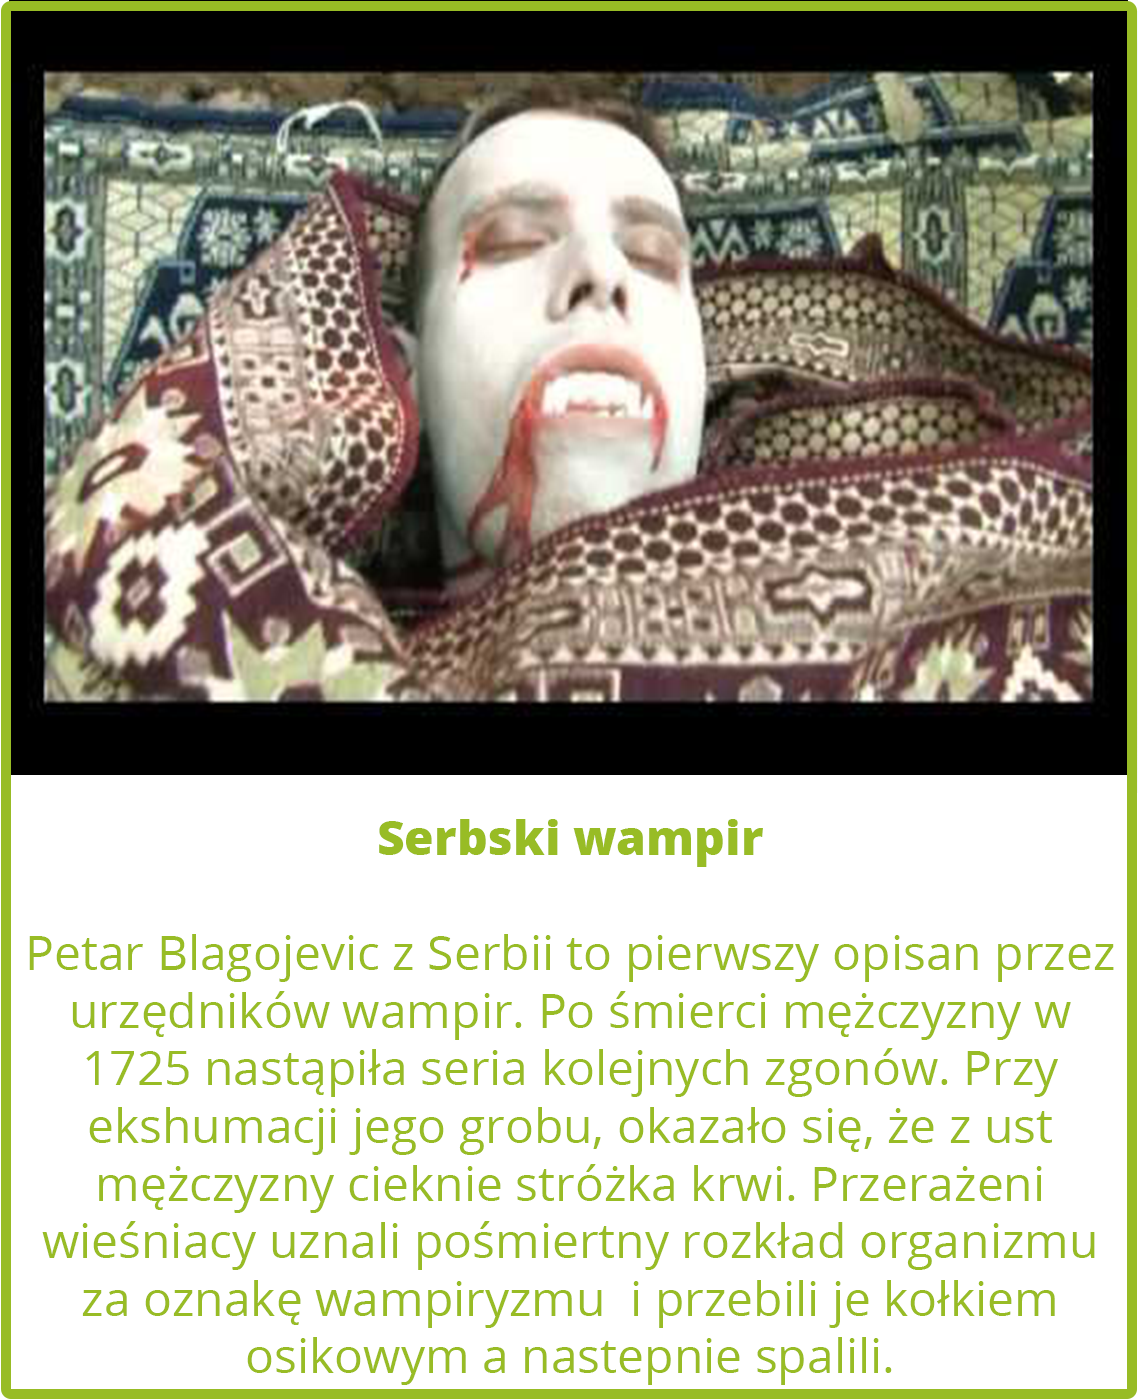 Serbski wampir